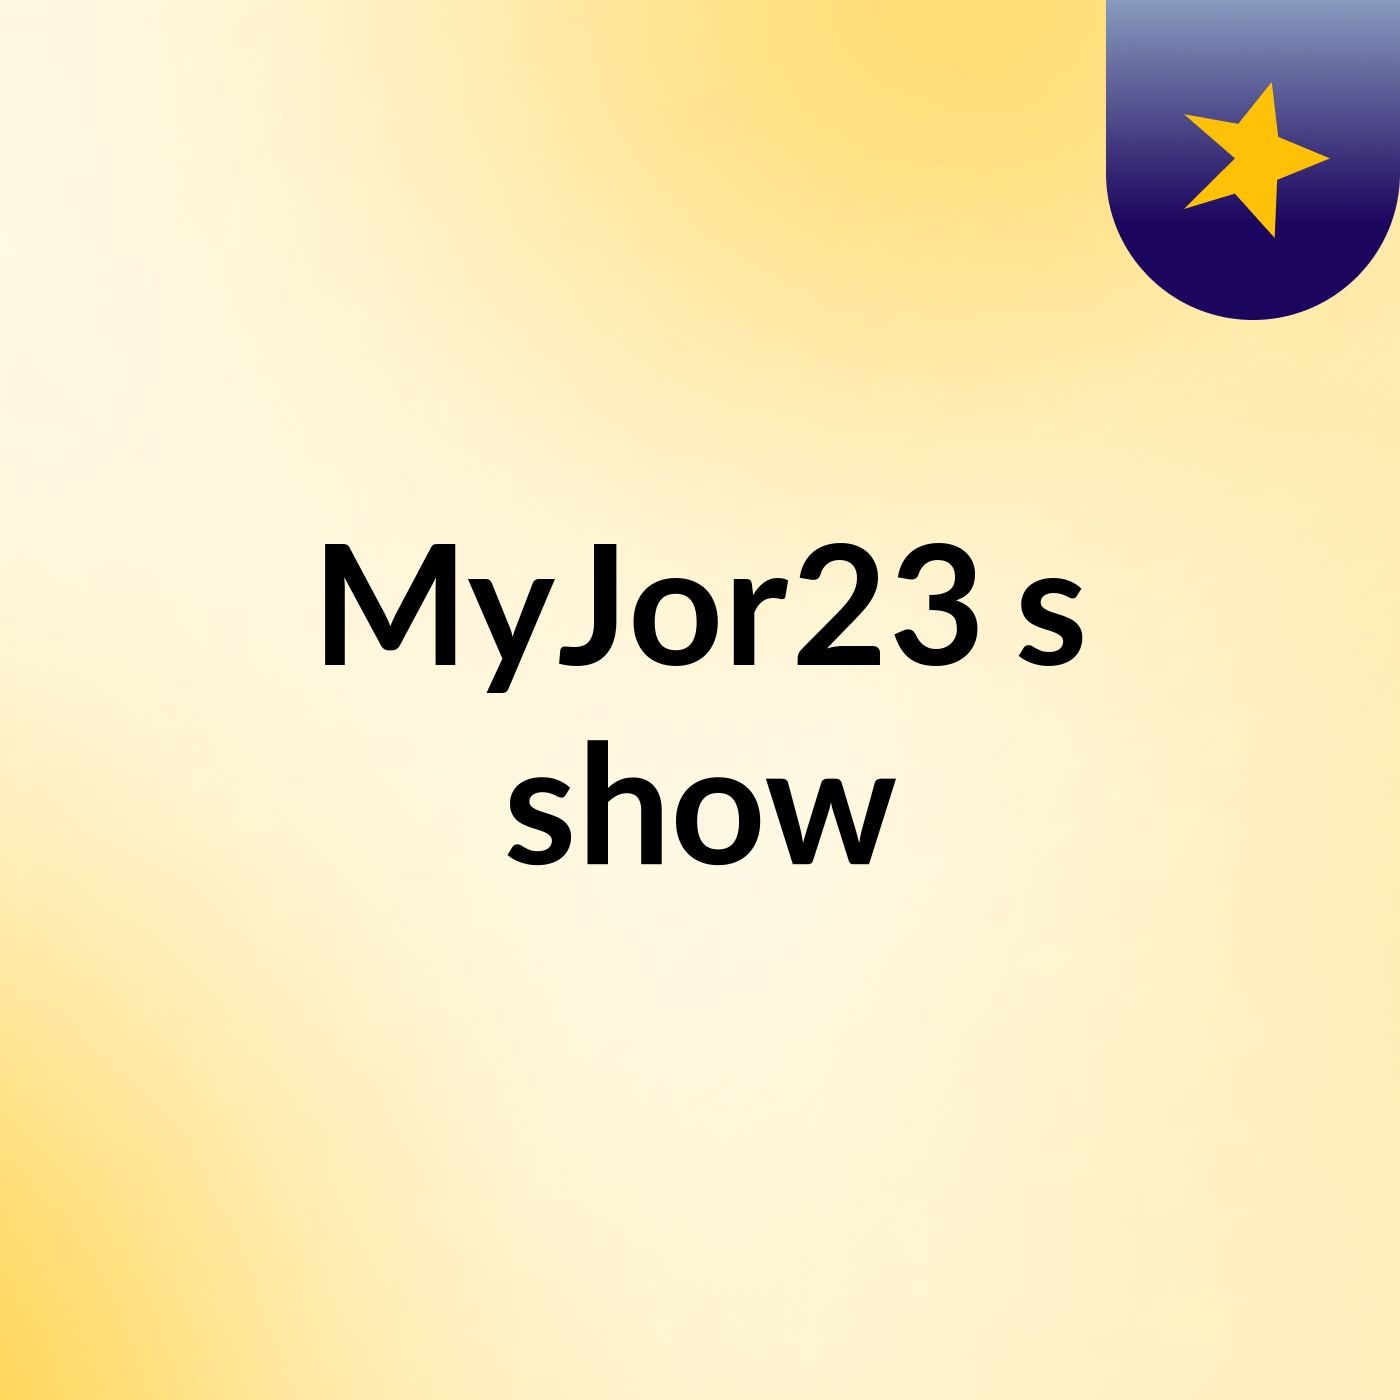 MyJor23's show